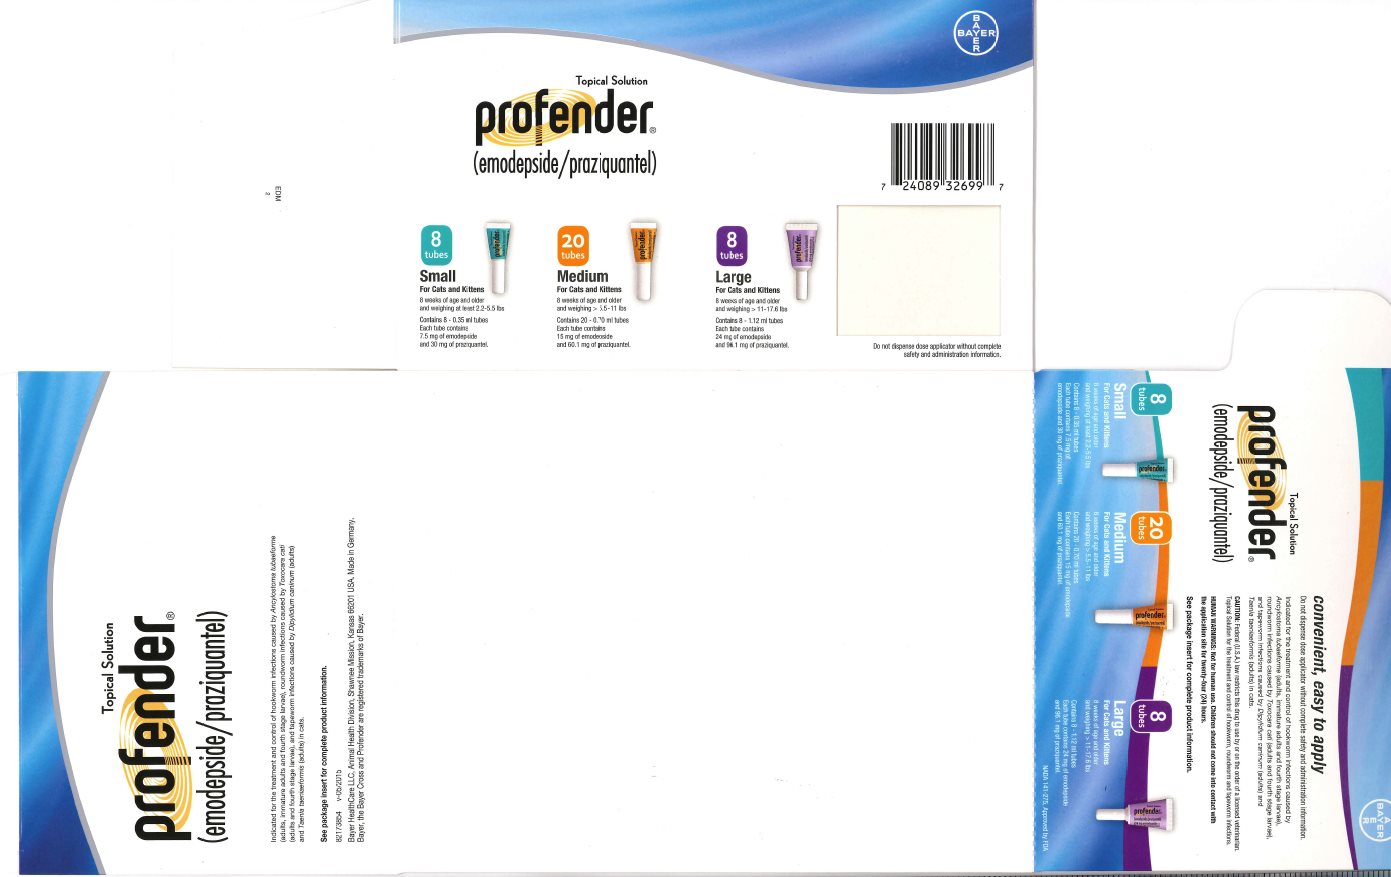 Profender (emodepside/praziquantel) Topical Solution Kit front label